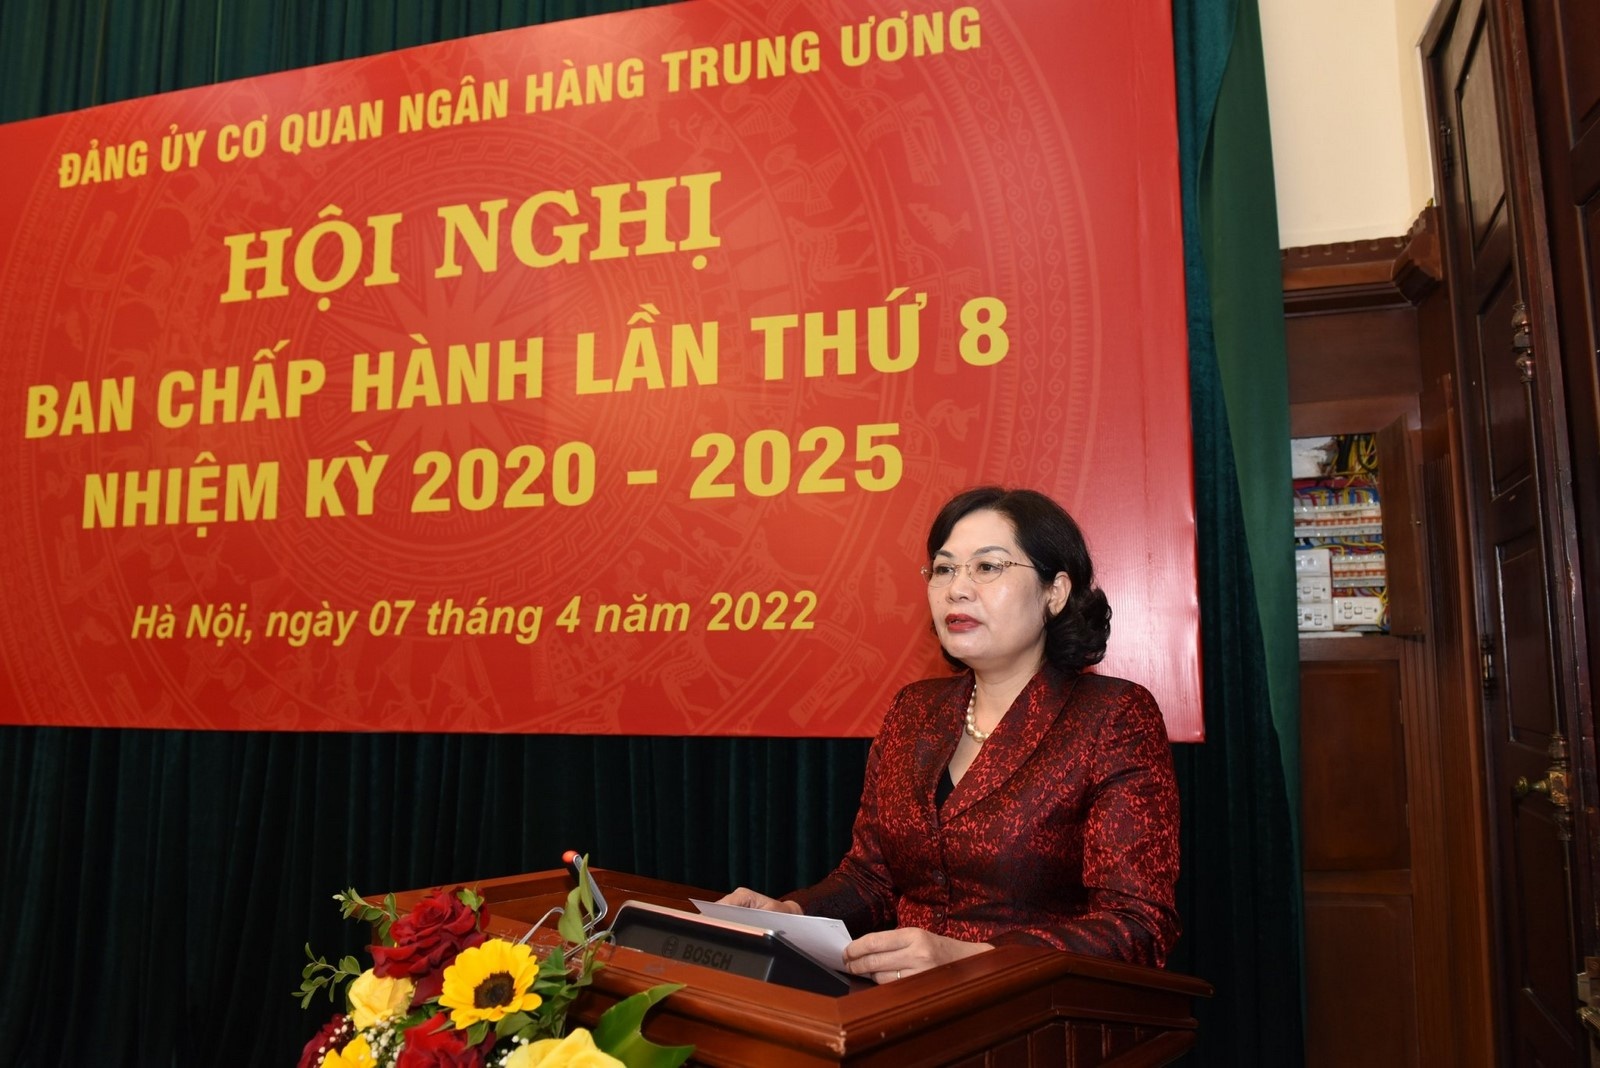 dang uy co quan nhtw to chuc hoi nghi ban chap hanh dang bo lan thu 8 nhiem ky 2020 2025